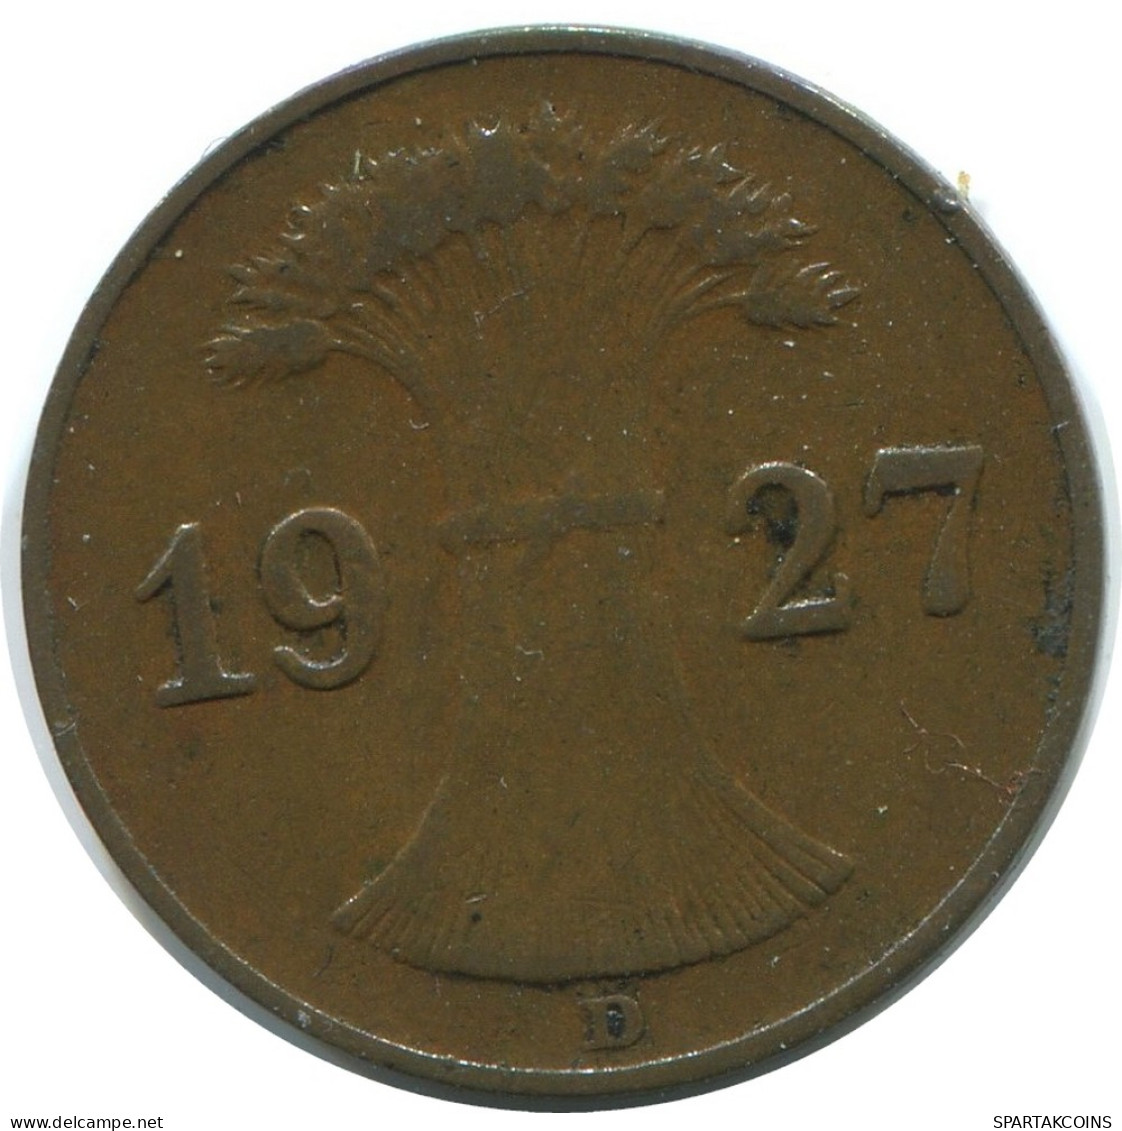 1 REICHSPFENNIG 1927 D GERMANY Coin #AE225.U - 1 Rentenpfennig & 1 Reichspfennig